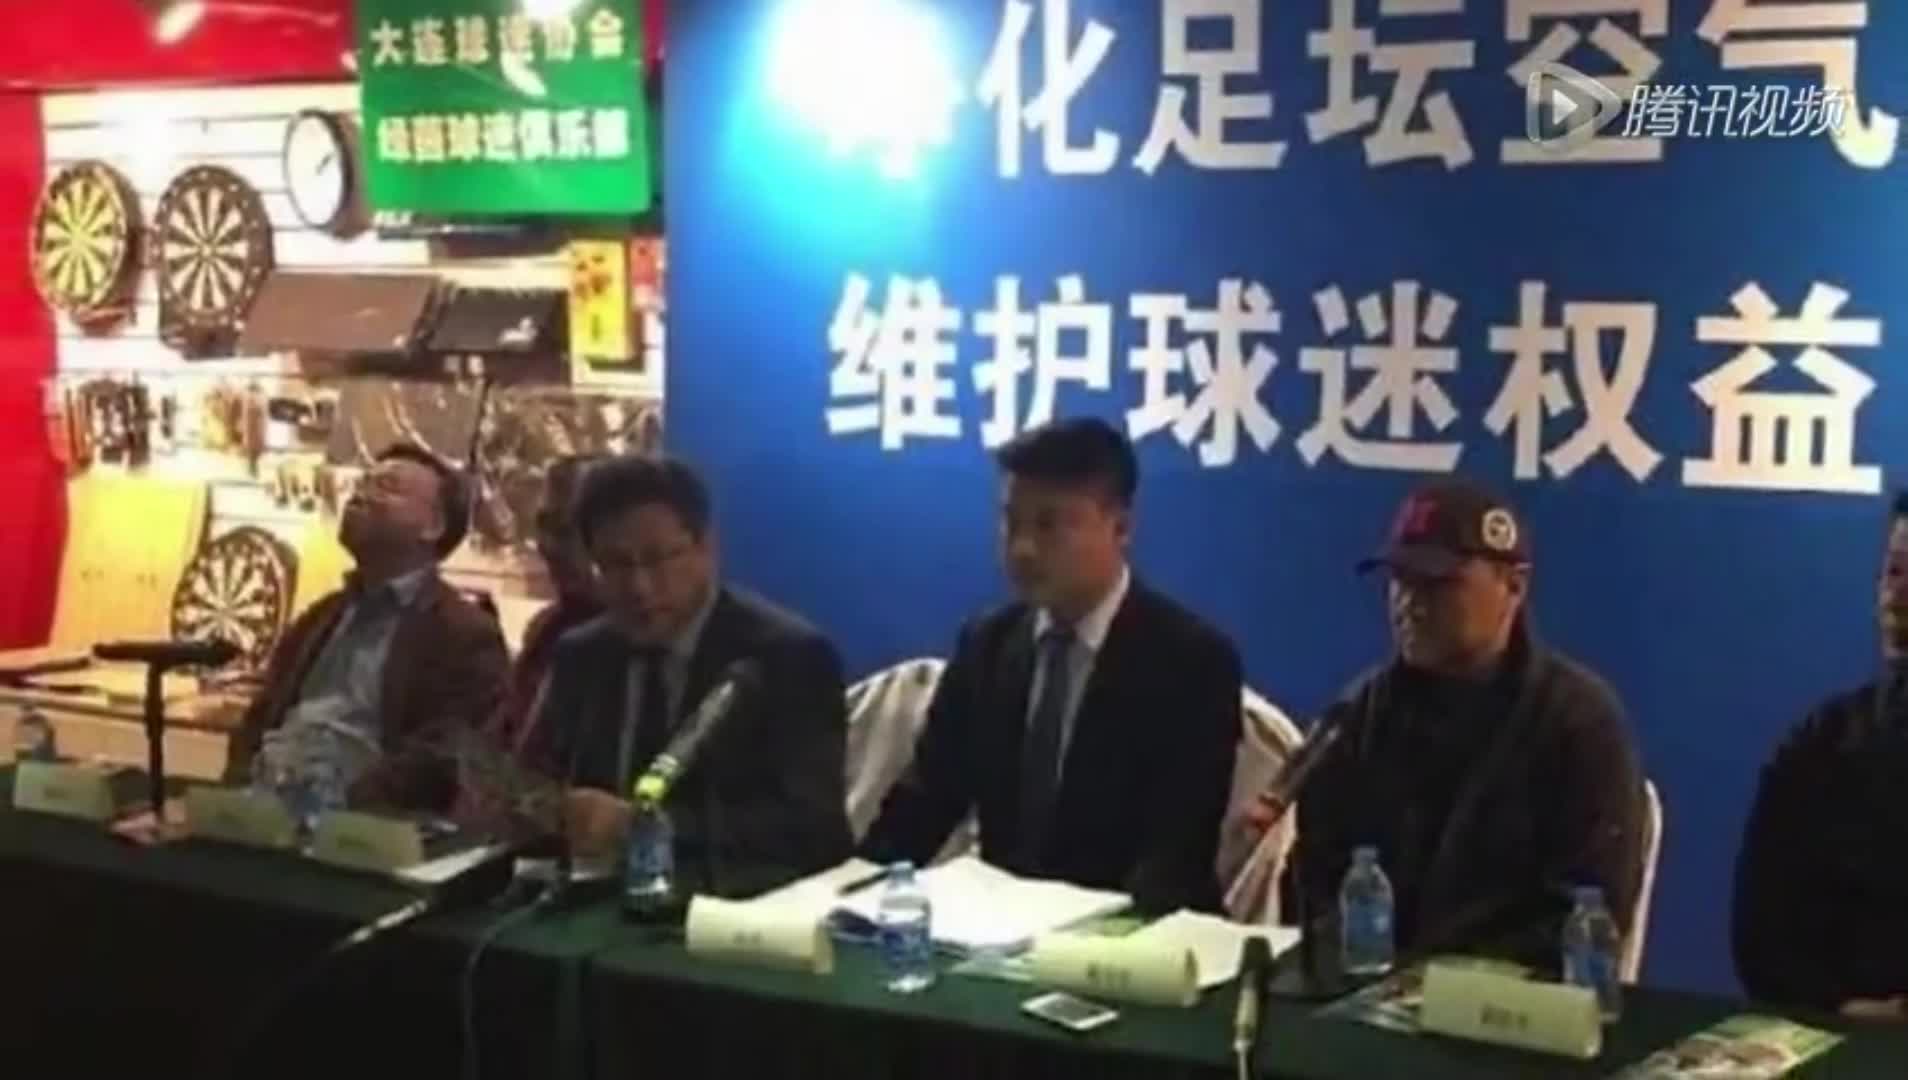 2015年大连球迷会曾实名举报河北华夏违纪违法收买对手